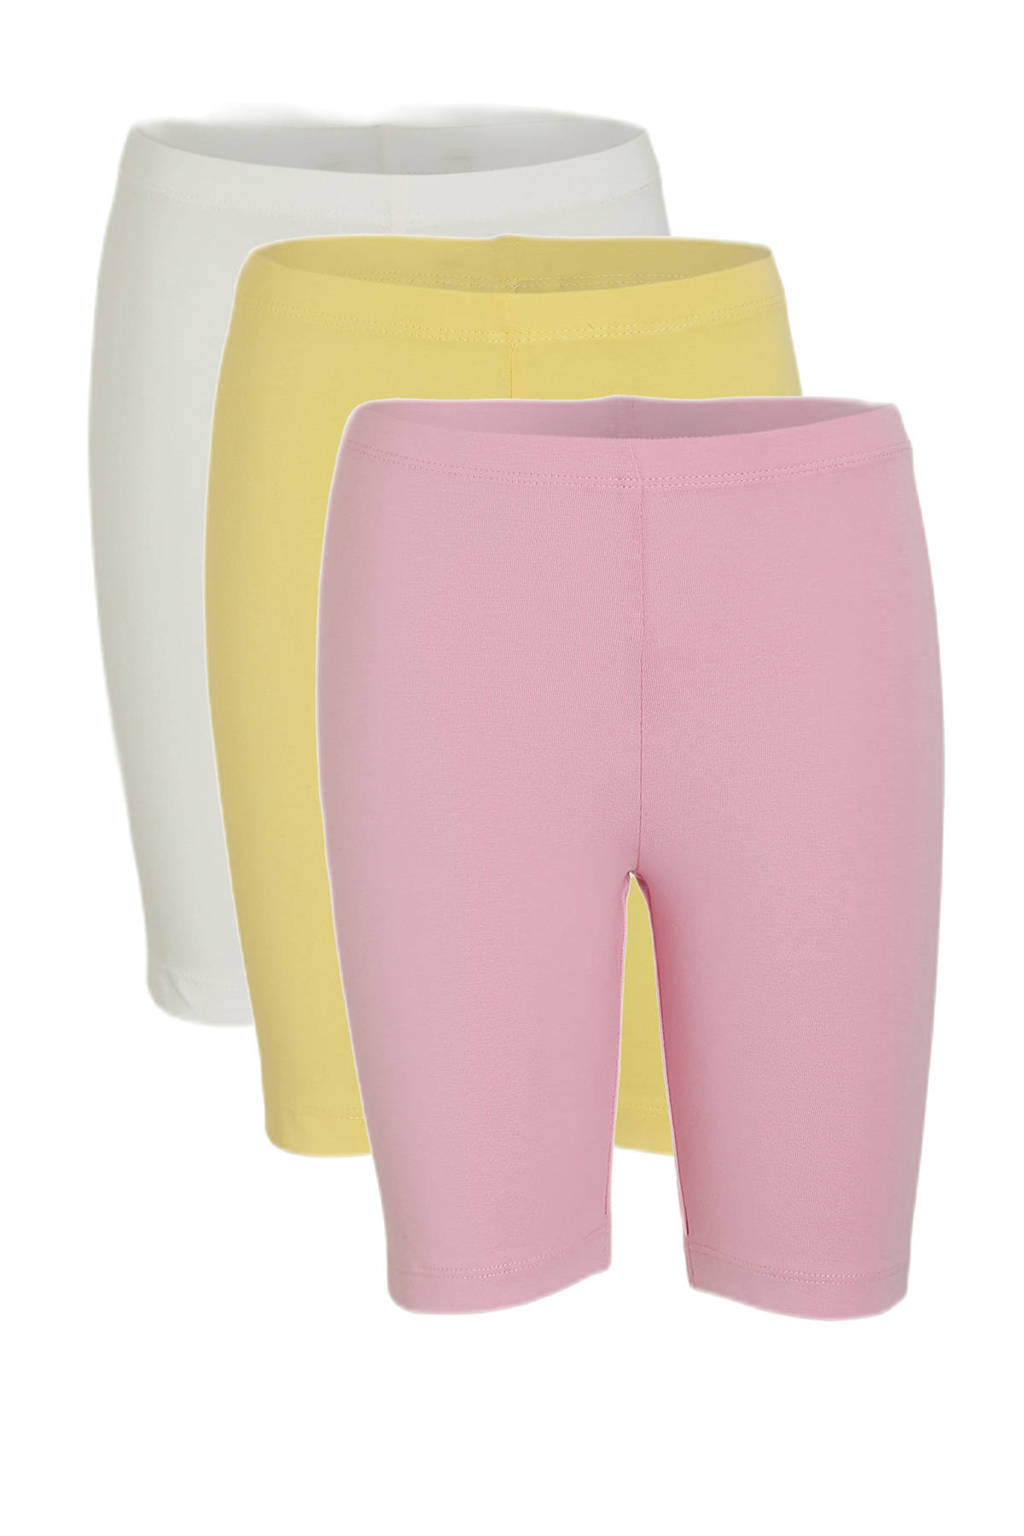 Set van 3 wit, roze en gele meisjes C&A cycling short van stretchkatoen met elastische tailleband